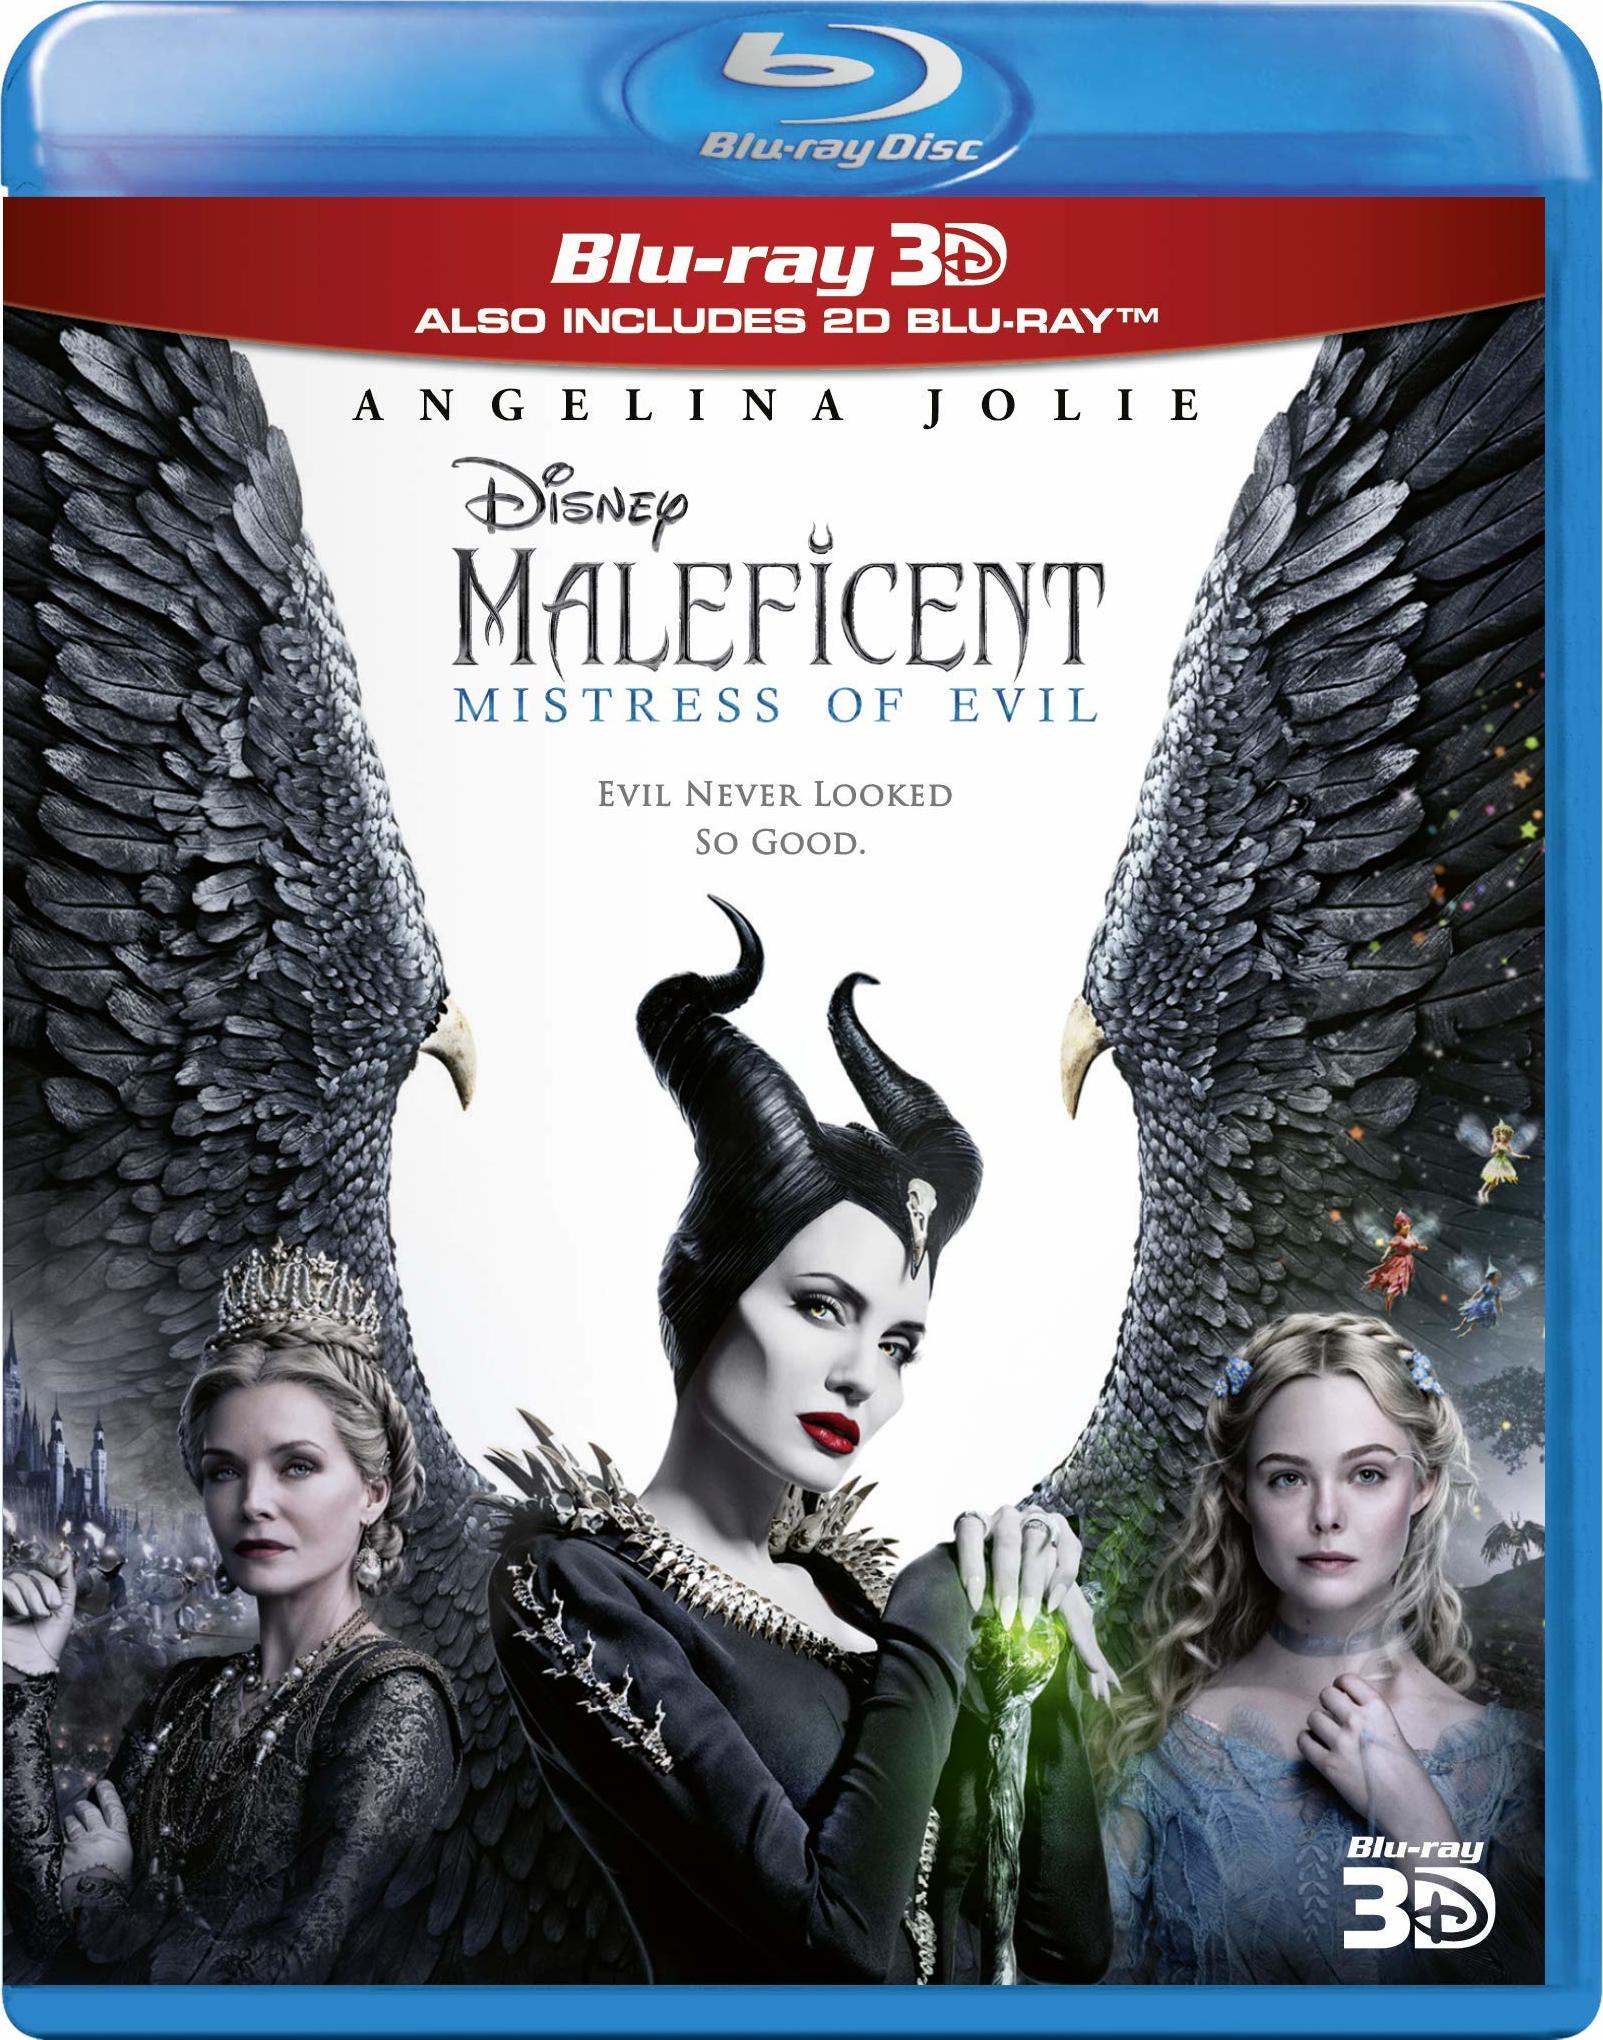 [沉睡魔咒2].Maleficent.Mistress.of.Evil.2019.UHD.BluRay.2160p.HEVC.TrueHD.7.1-BeyondHD     58.19G-2.jpg